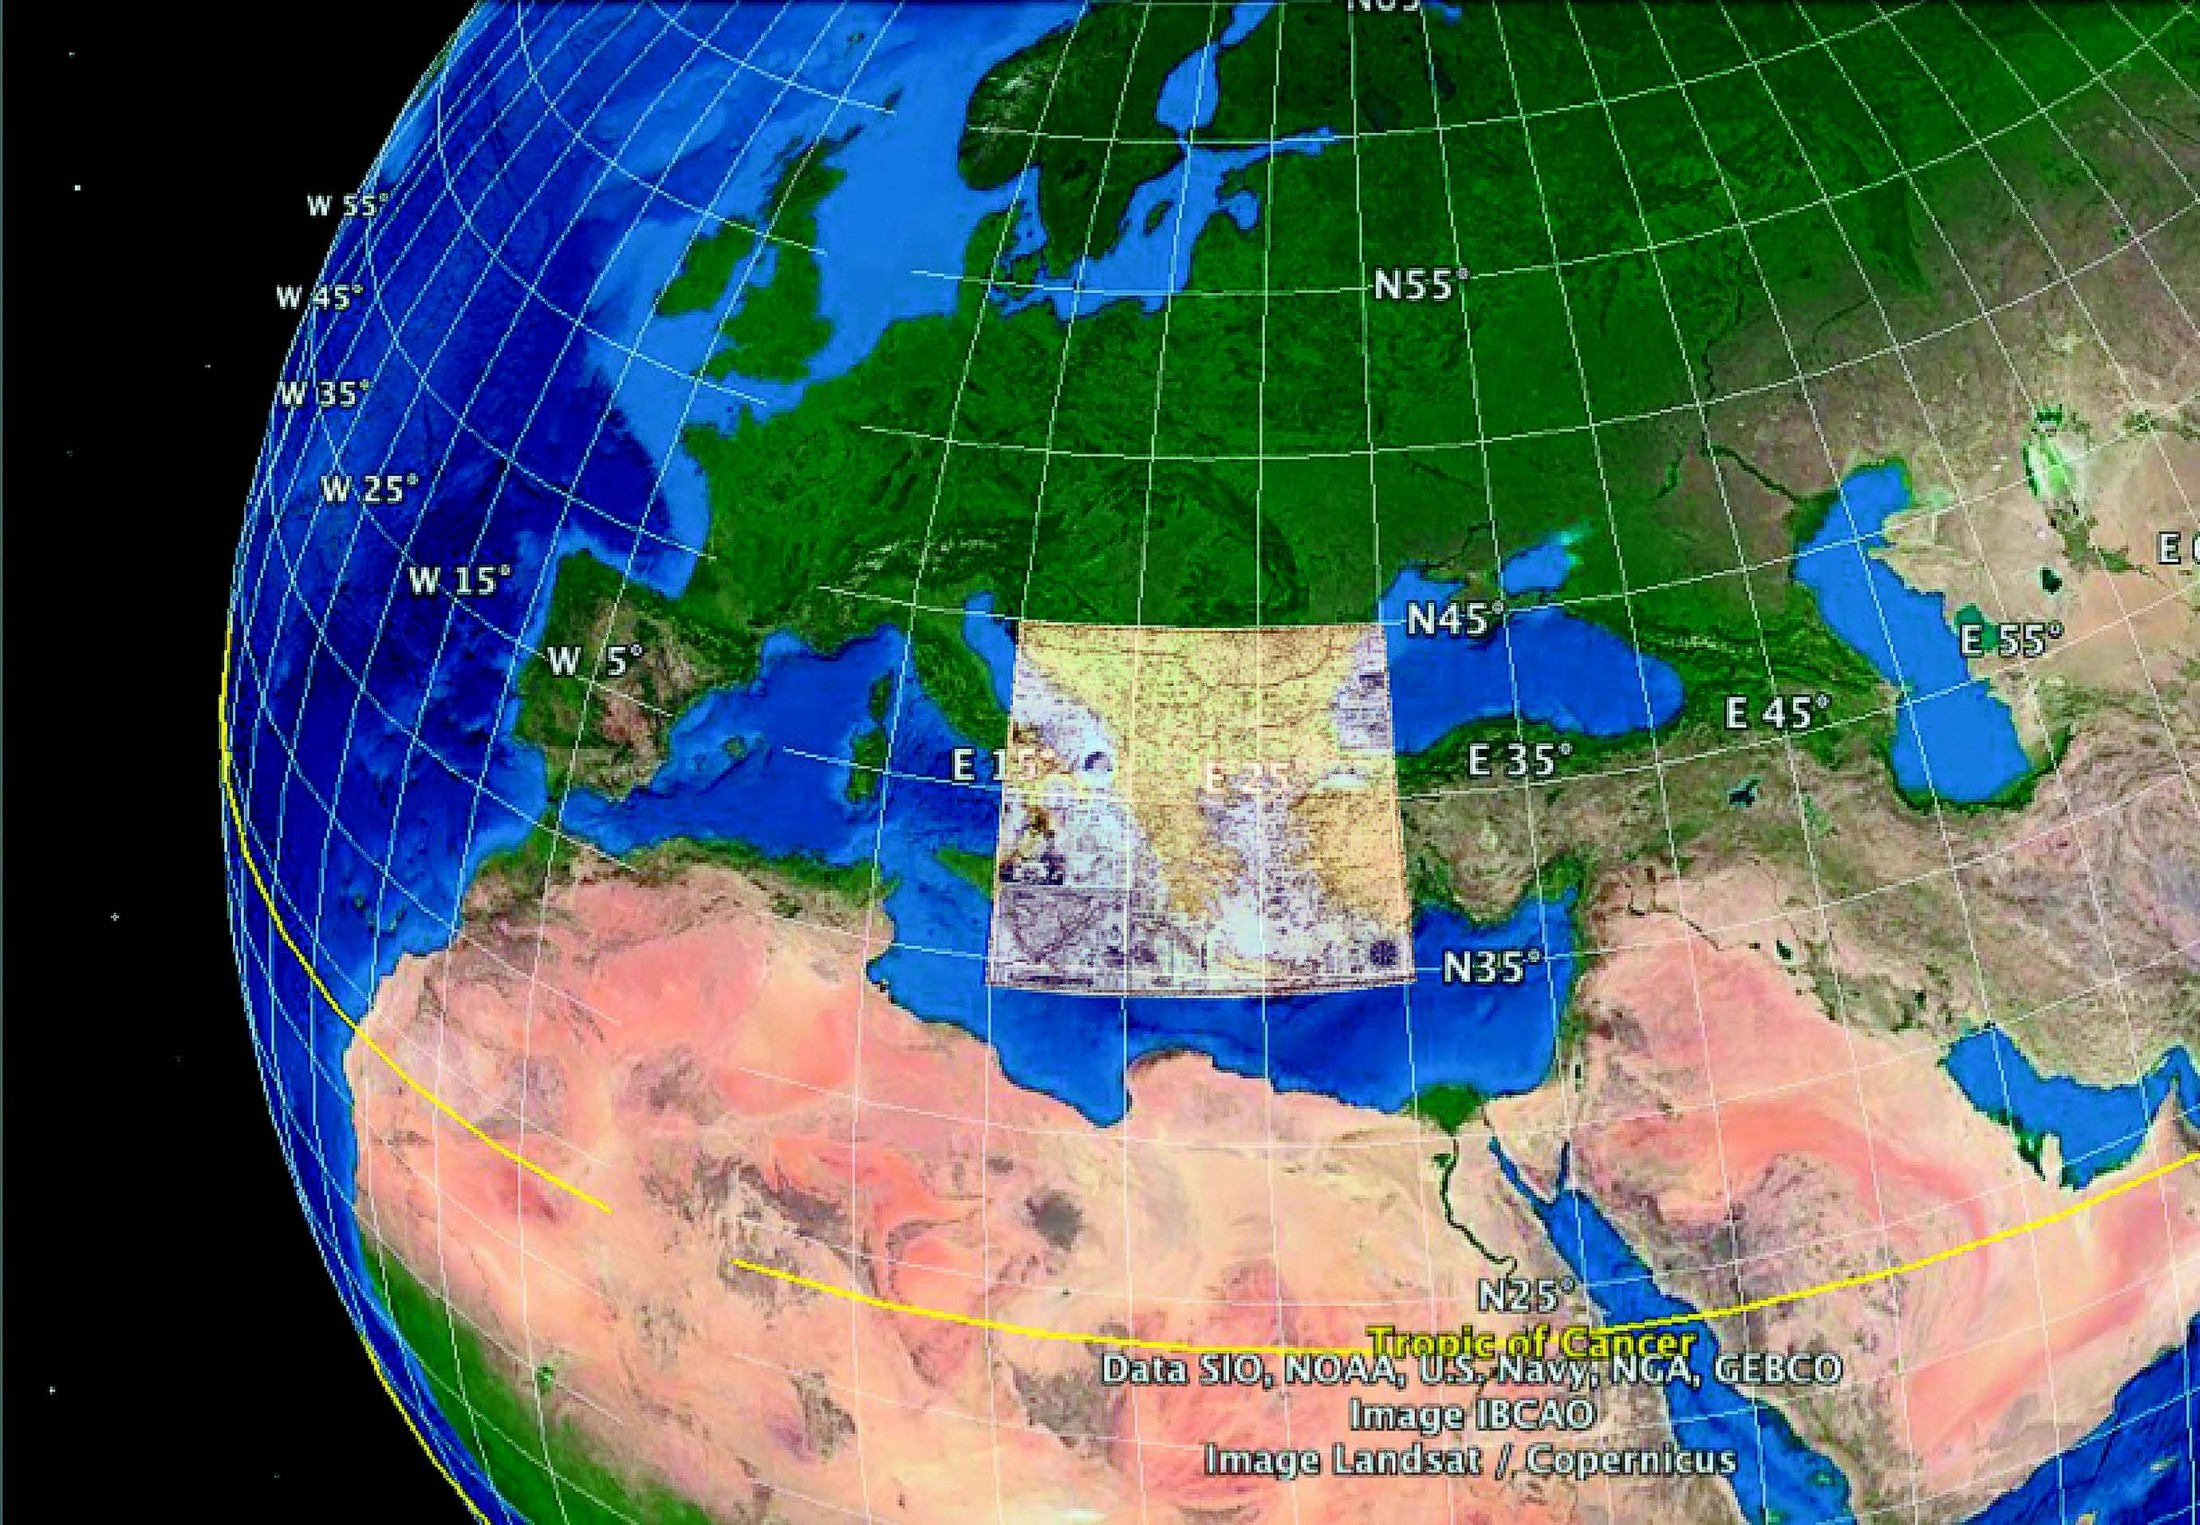 Το γεωγραφικό παράθυρο της Χάρτας του Ρήγα Βελεστινλή προσαρμοσμένο κατάλληλα στο αντίστοιχο πλέγμα μεσημβρινών και παραλλήλων μιας σύγχρονης απεικόνισης Google Earth